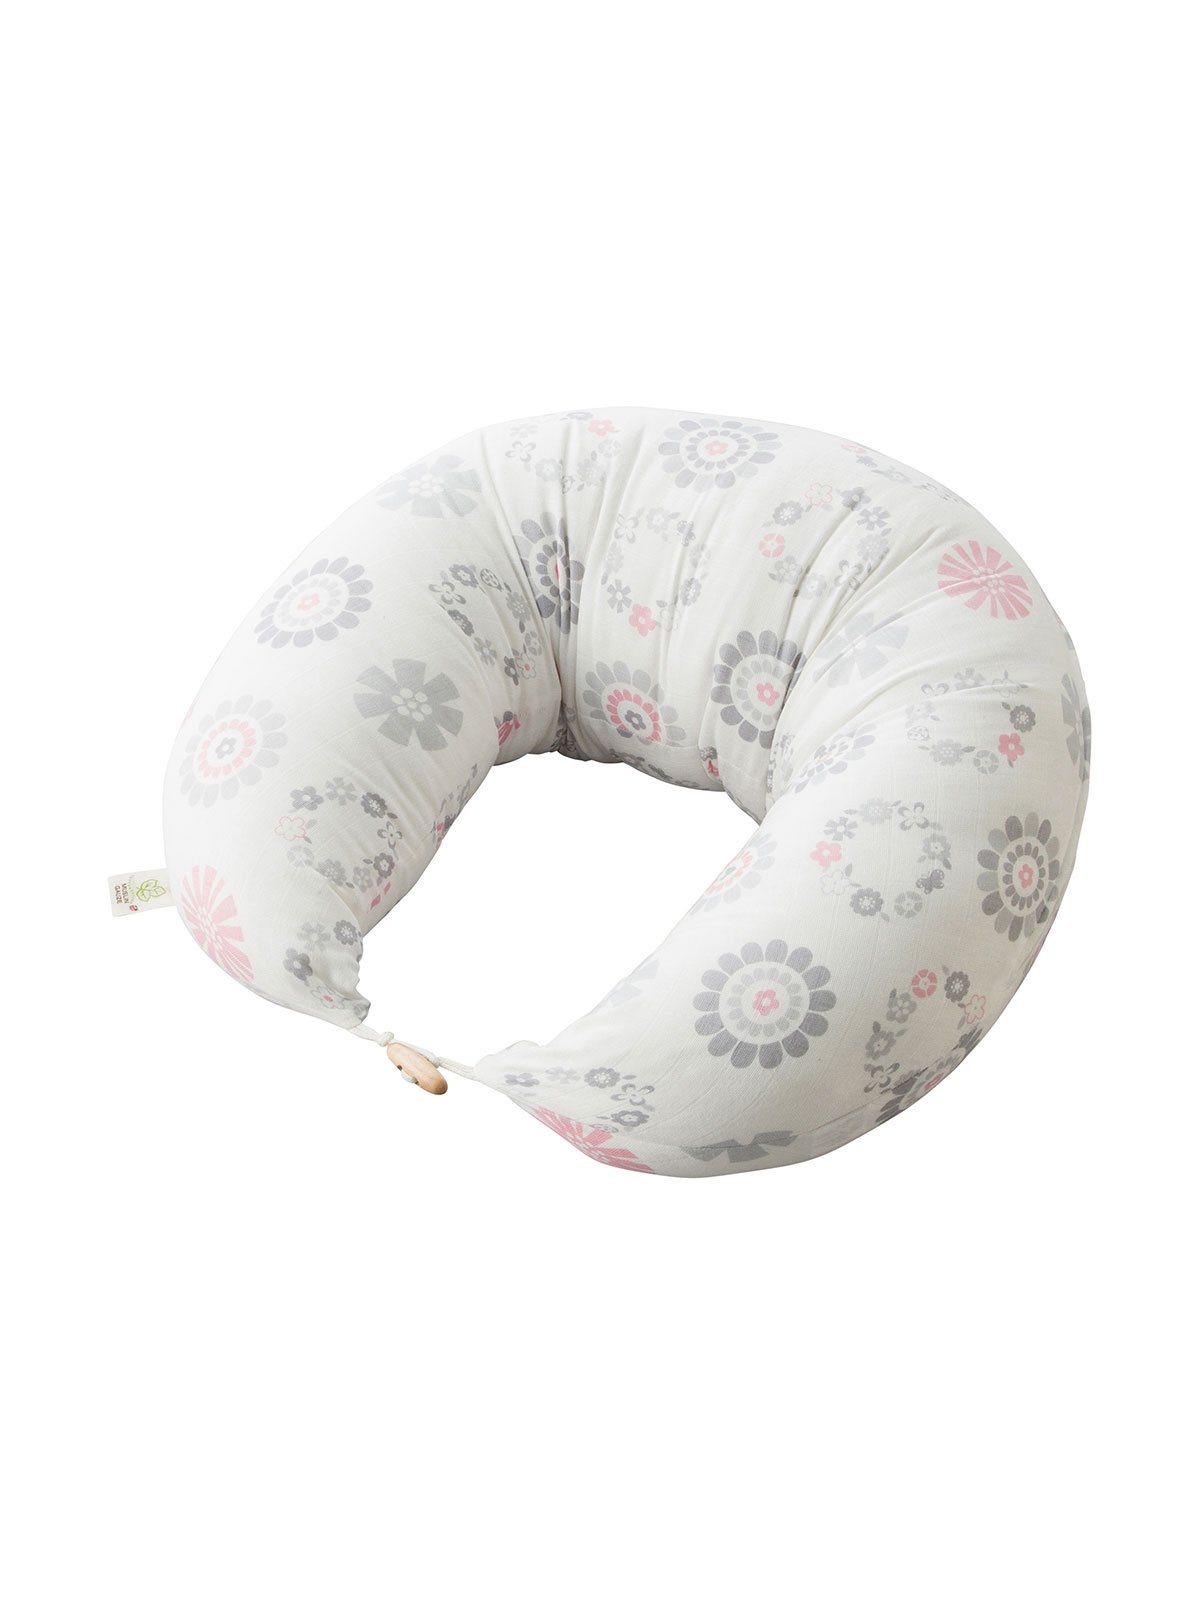 [最も欲しかった] 授乳 クッション 抱き 枕 人気 282565 - Nyohkikabegamiaixg